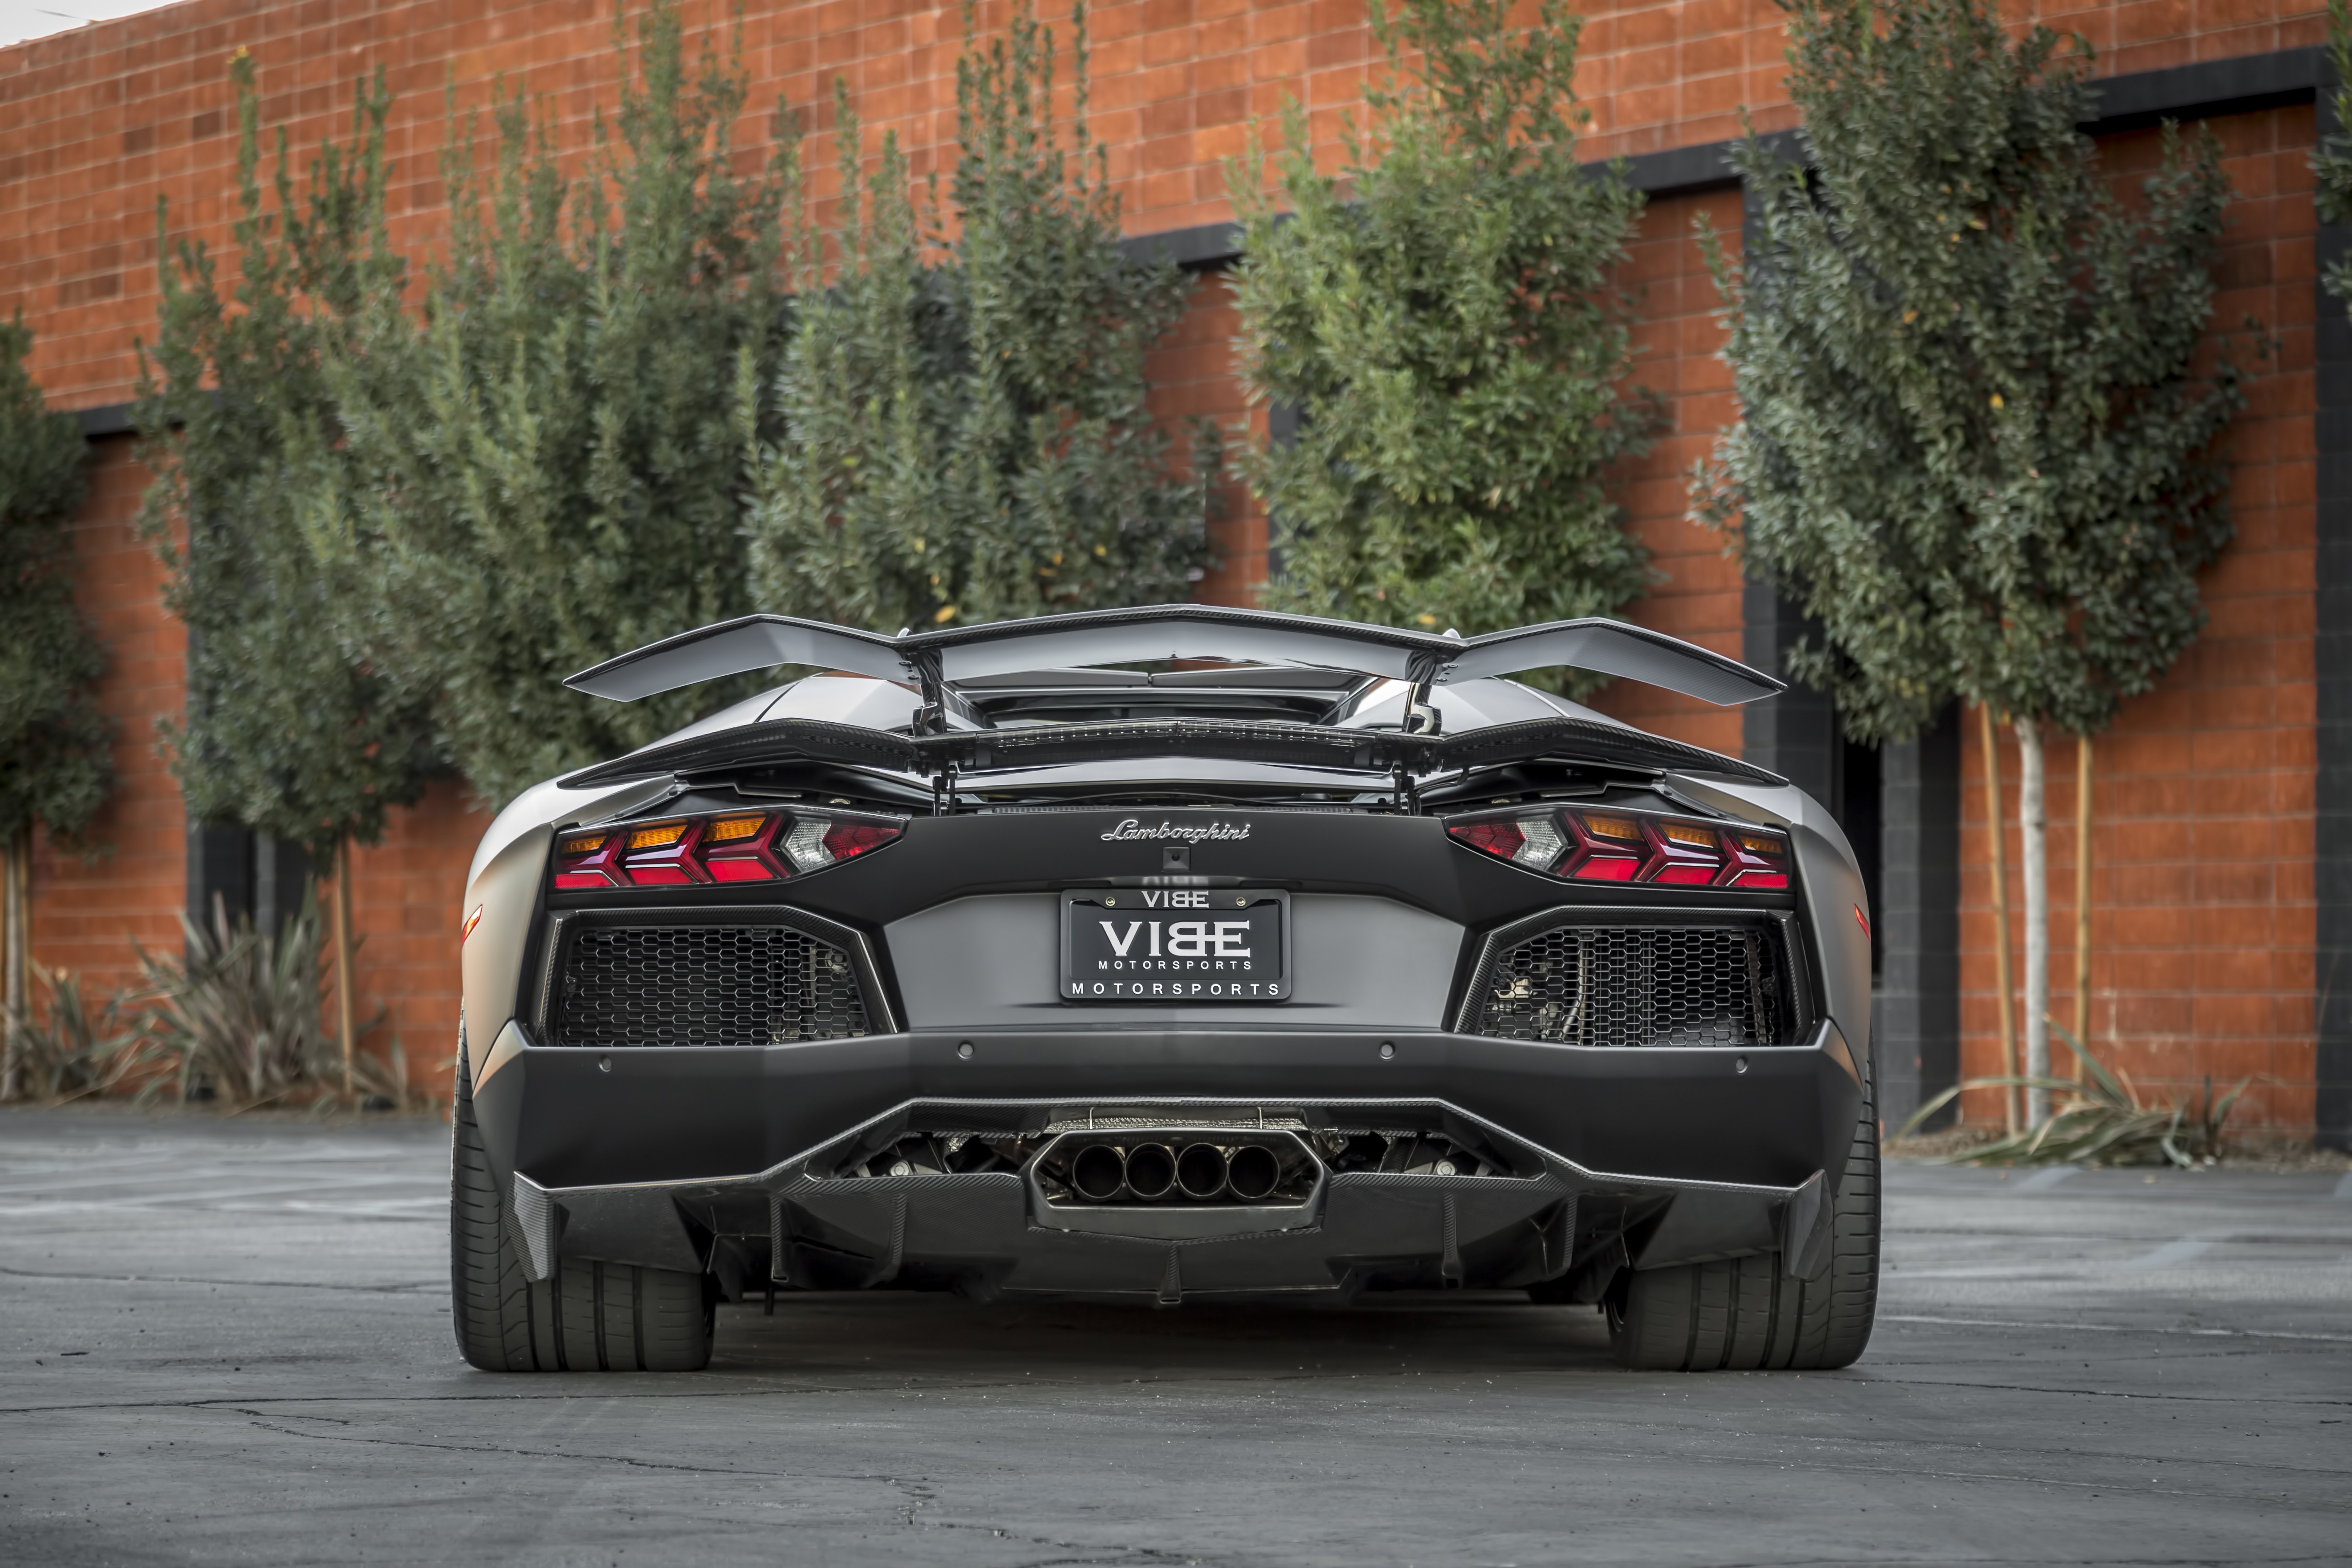 Carbon Fiber Rear Diffuser on Gray Lamborghini Aventador - Photo by Vorstiner